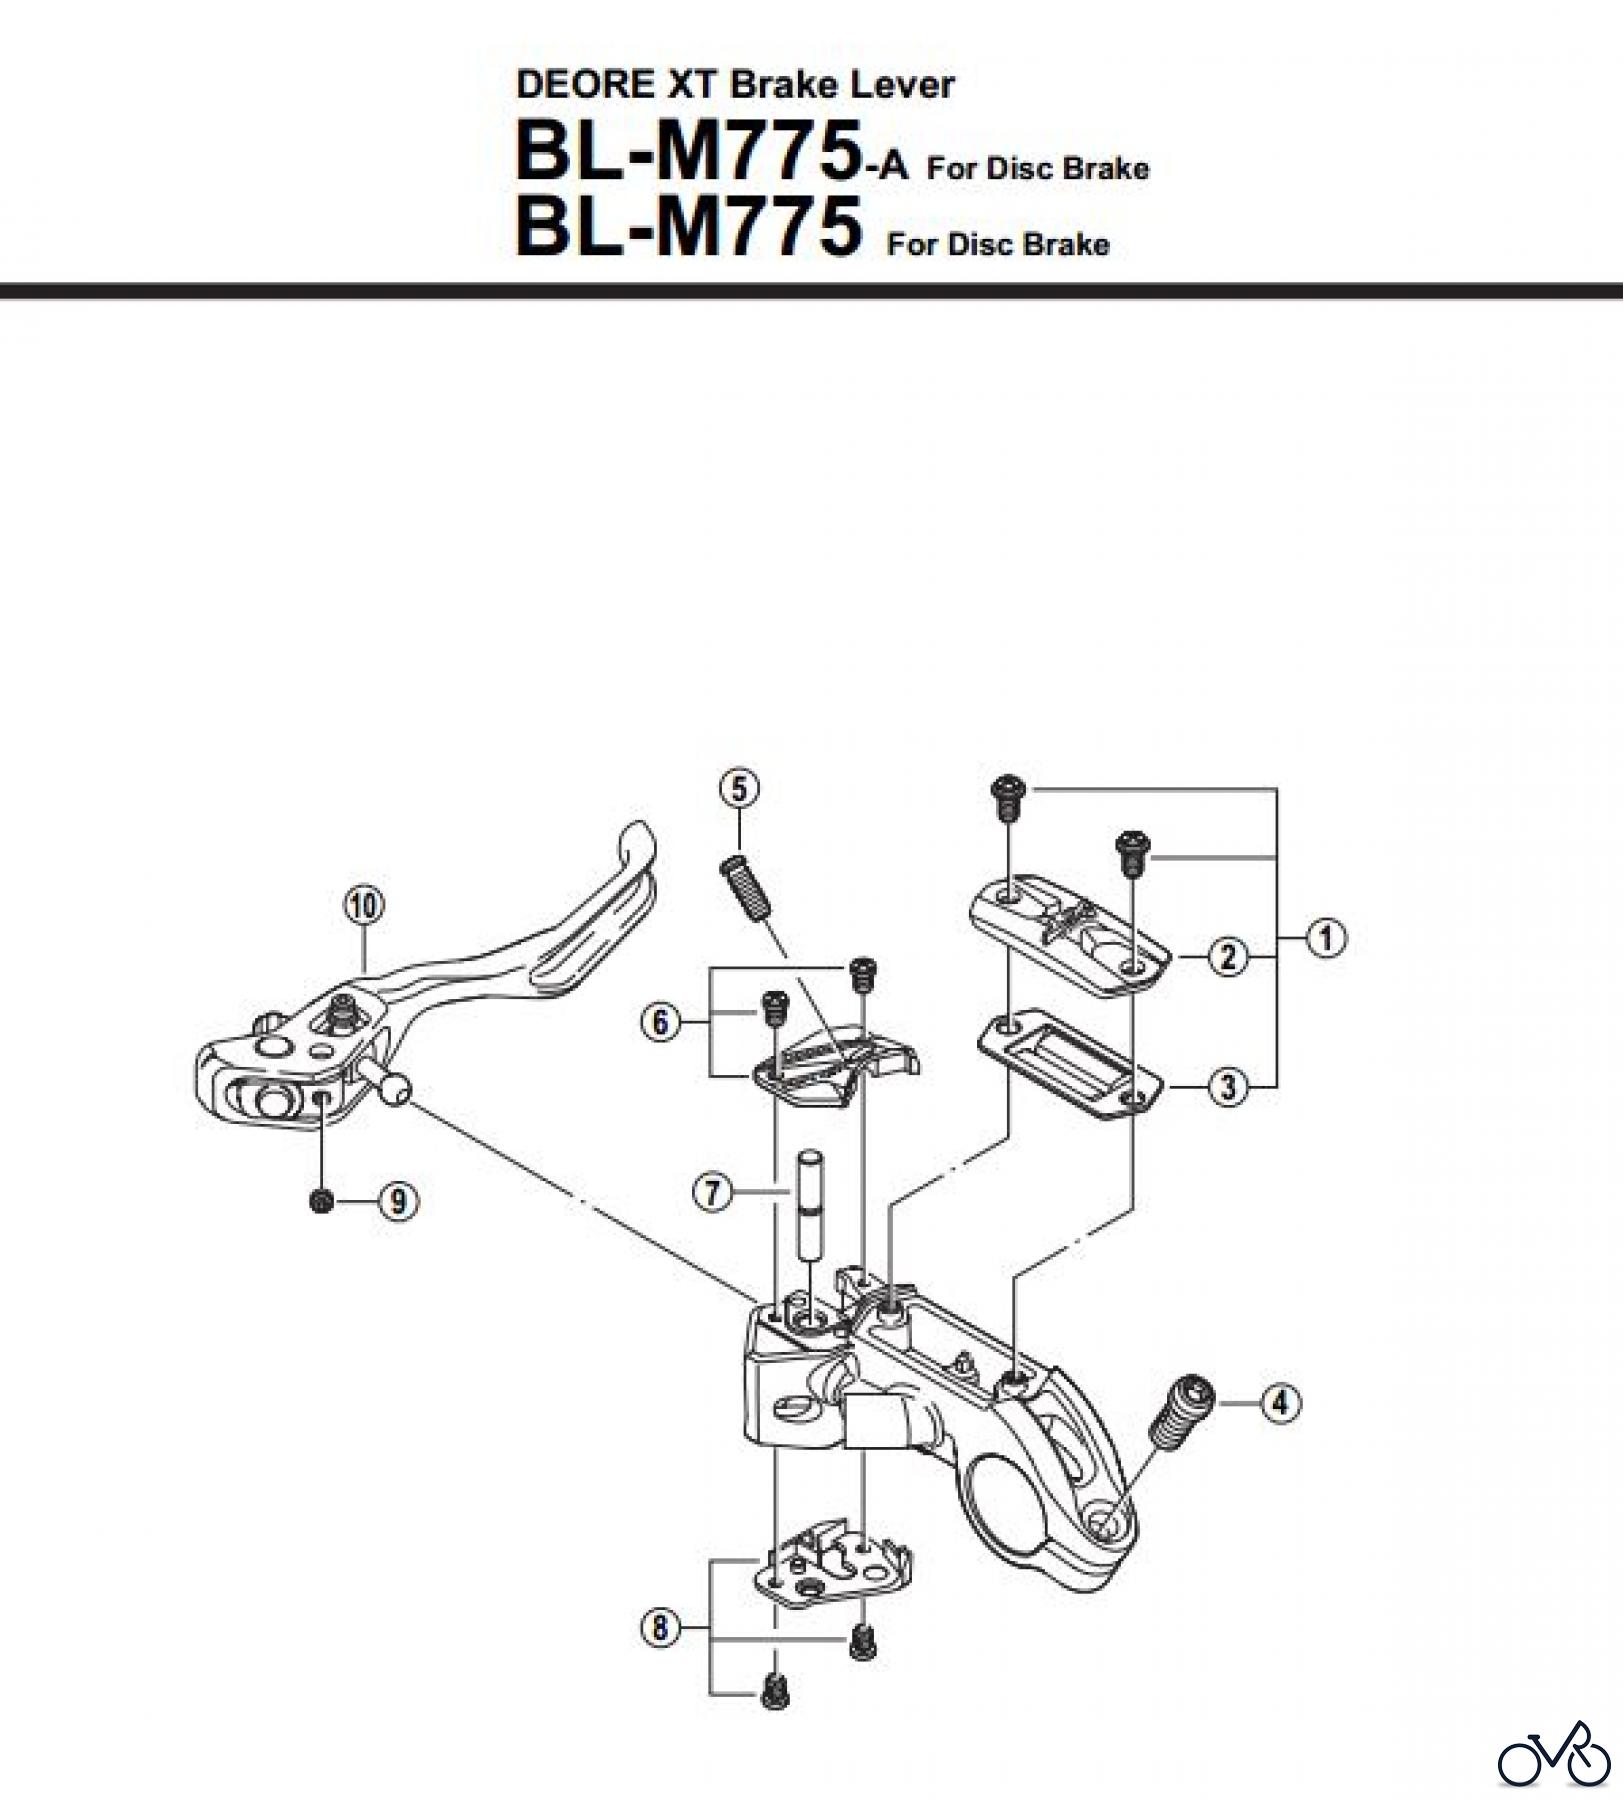  Shimano BL Brake Lever - Bremshebel BL-M775-2689B